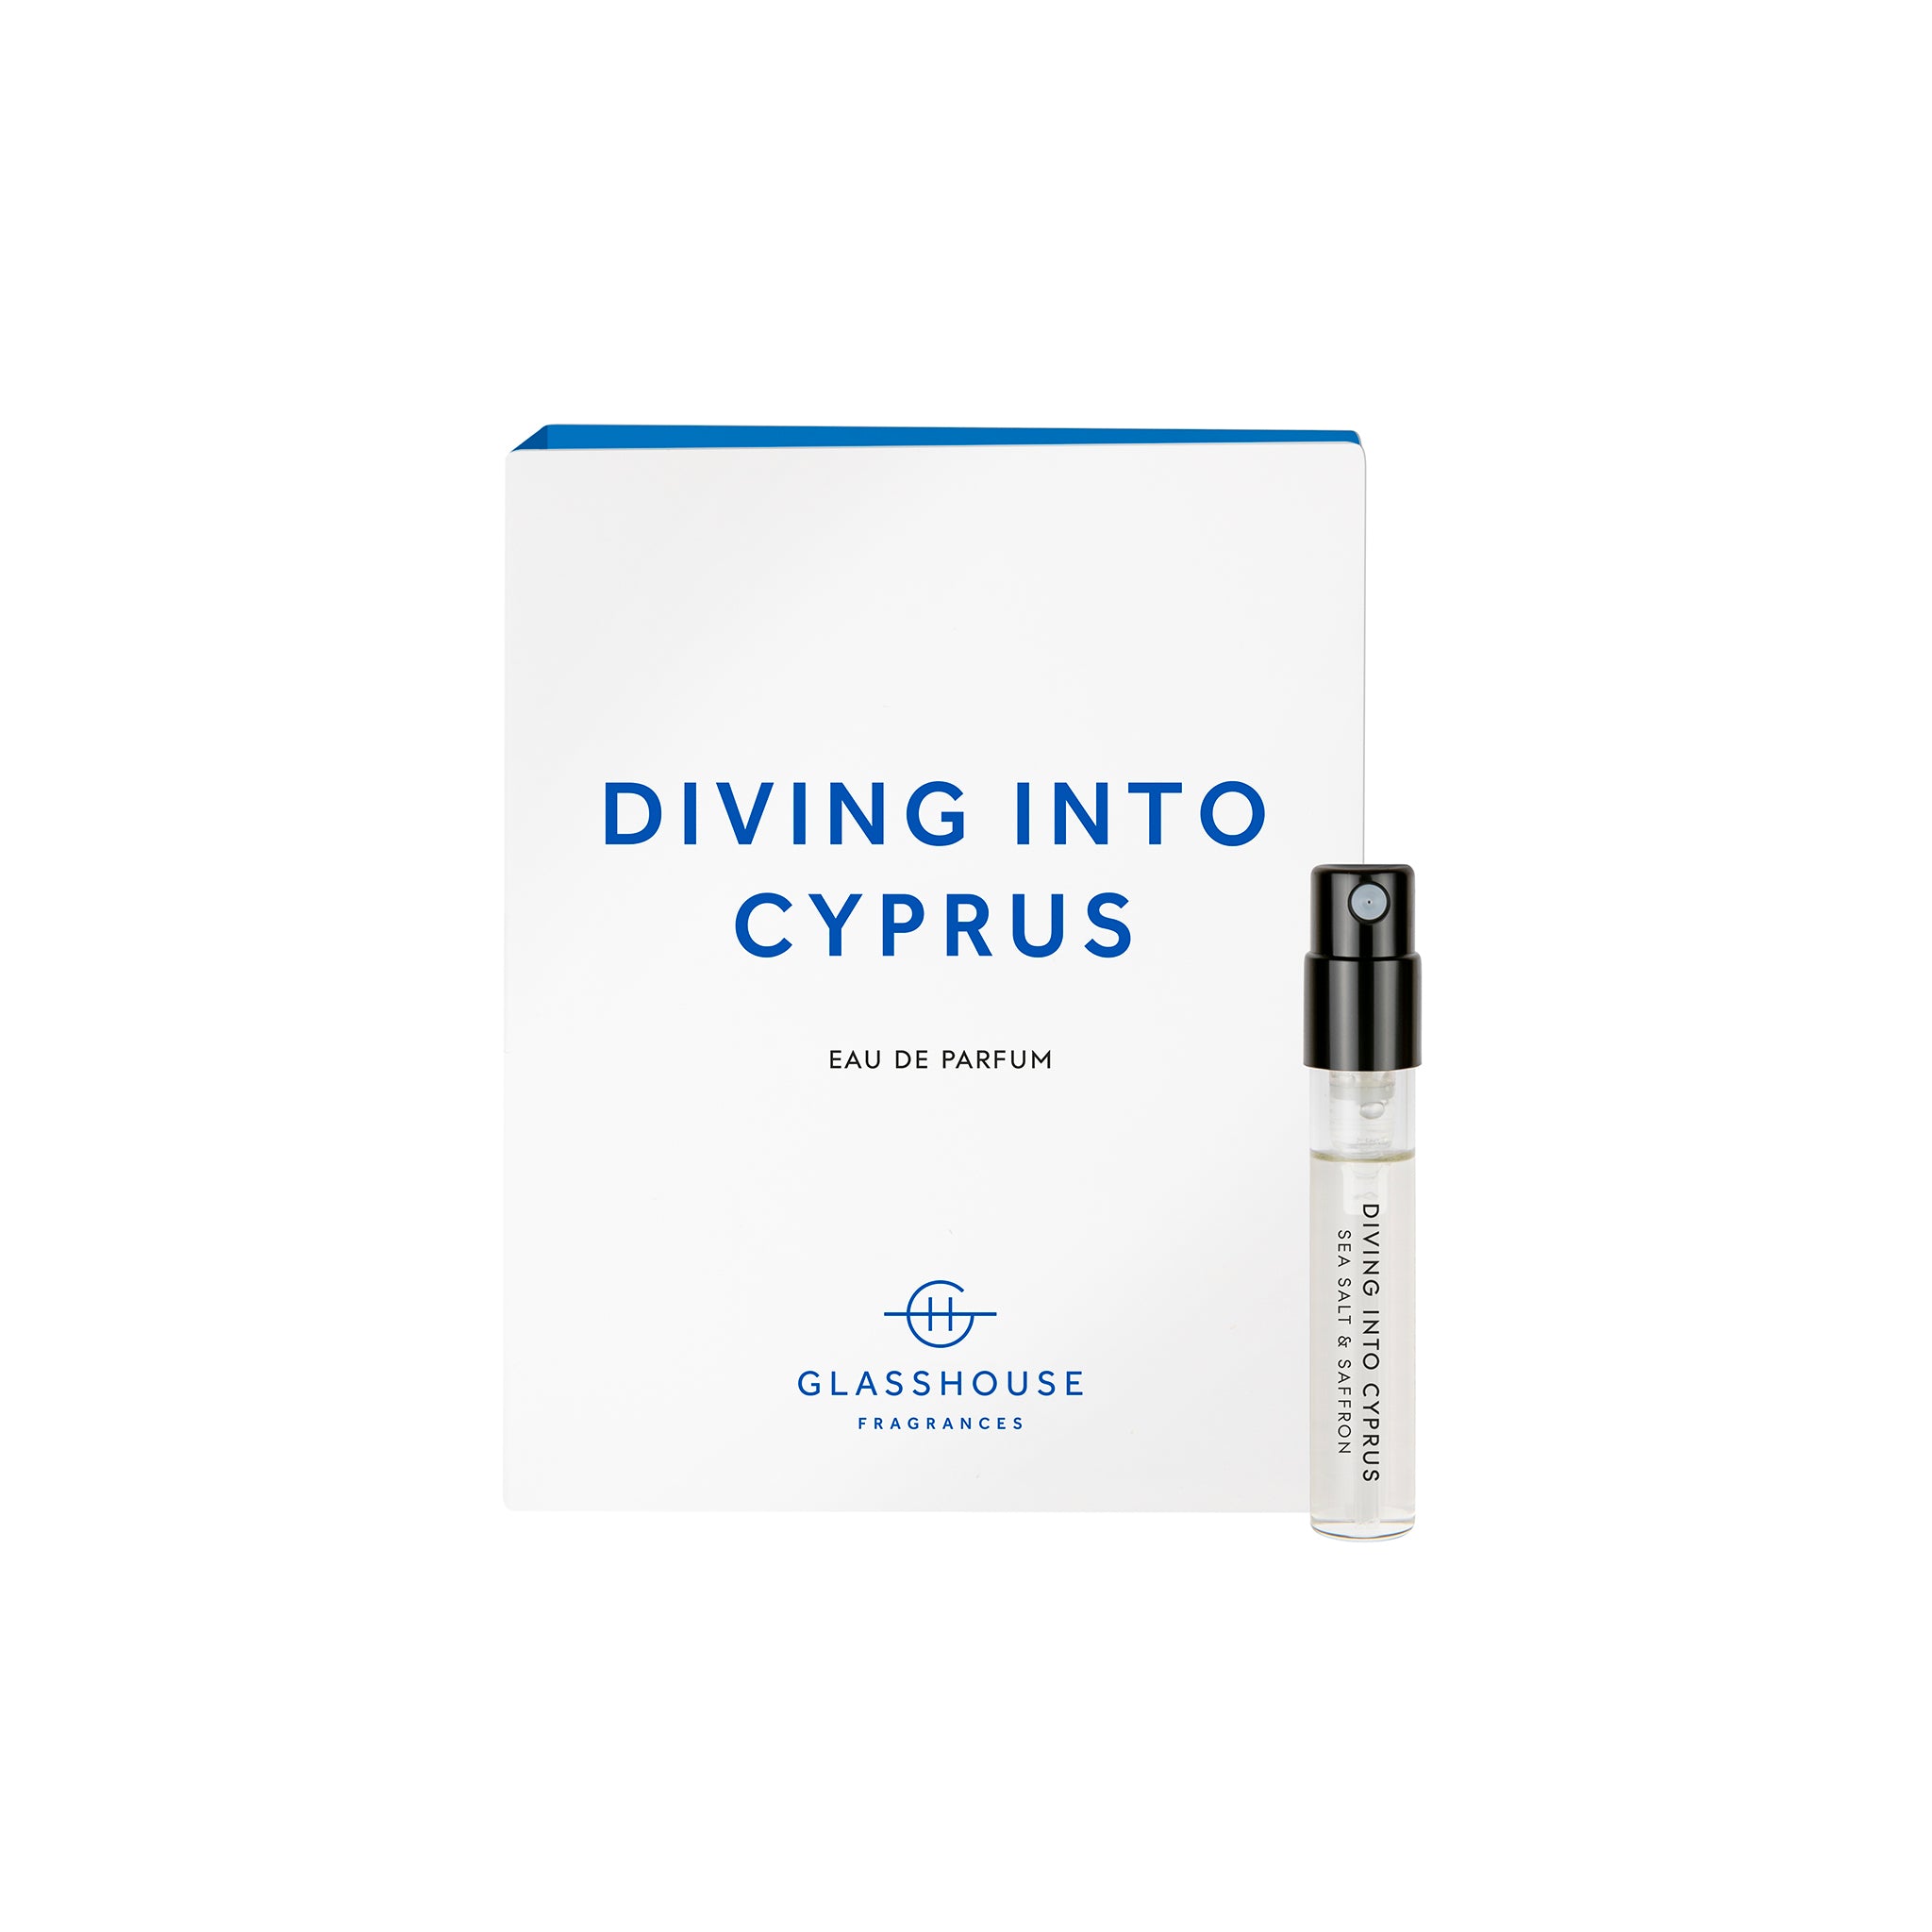 Glasshouse Fragrances Diving into Cyprus Sea Salt and Saffron 1.8g Sample Eau de Parfum spray and box